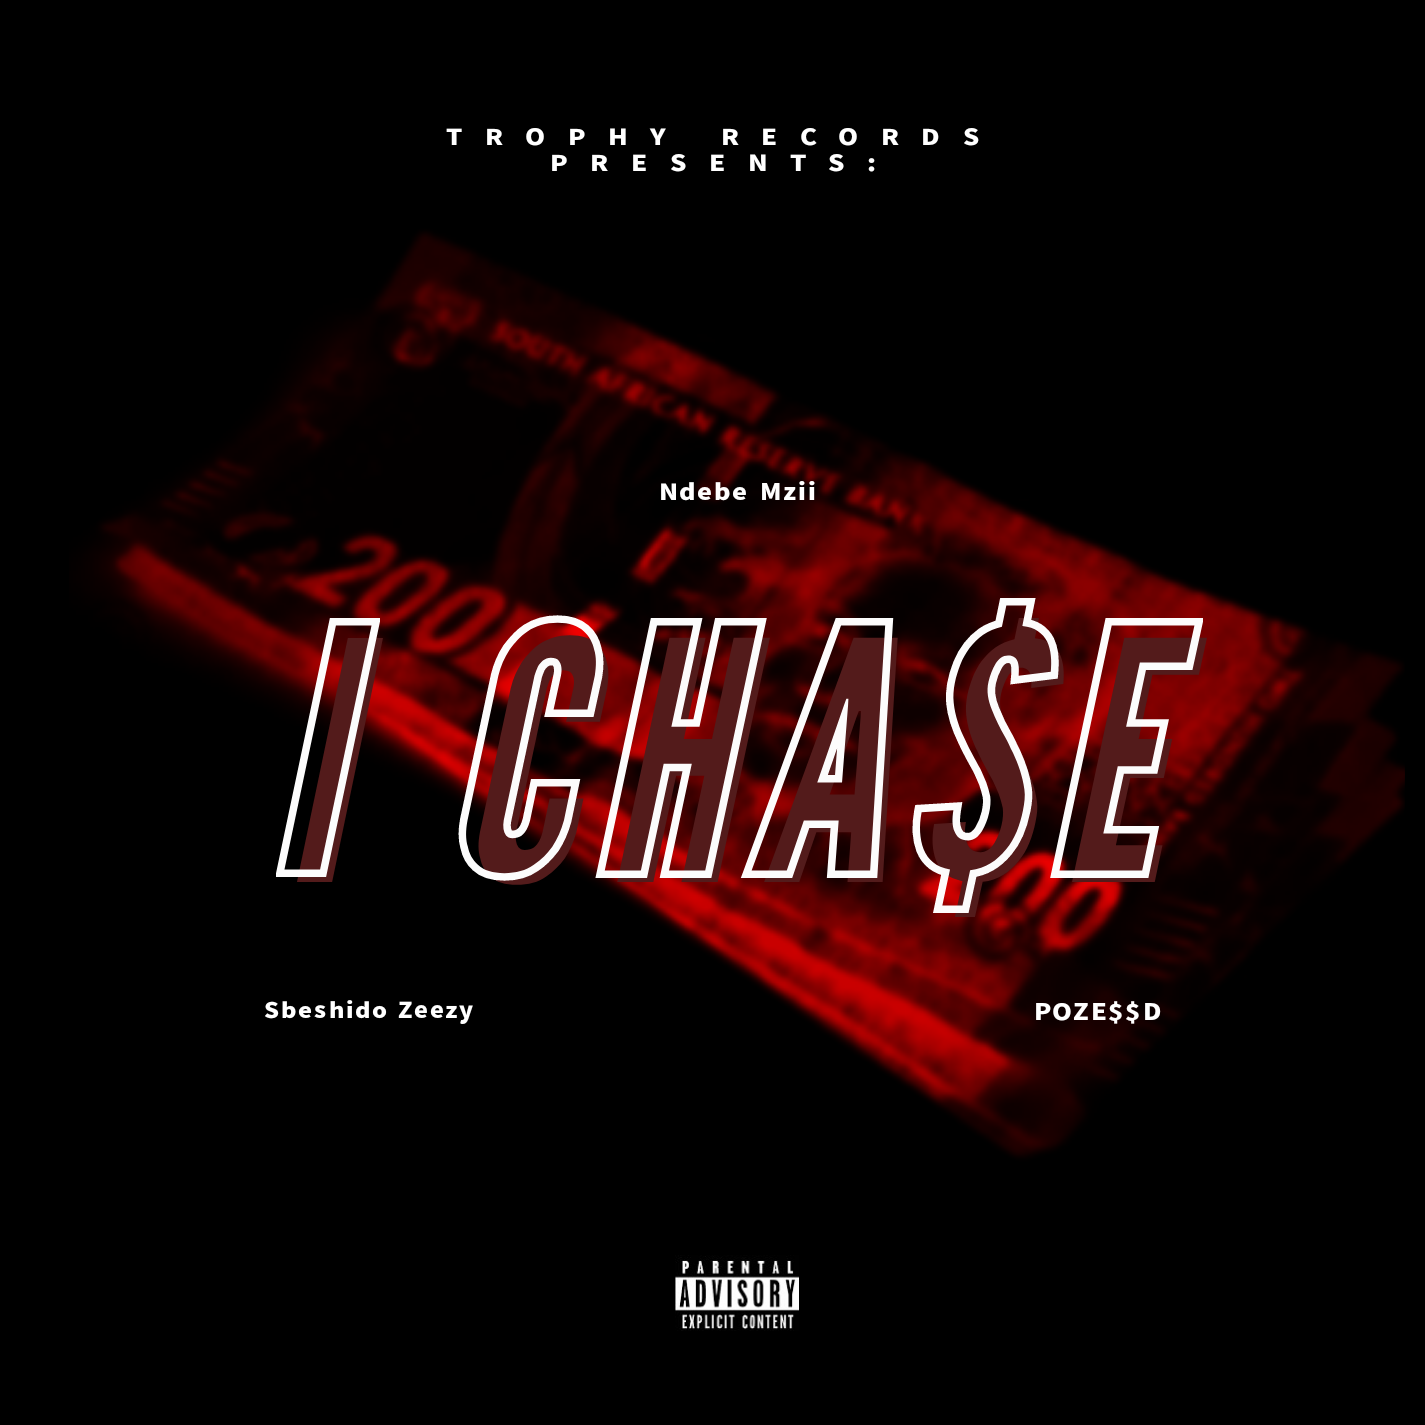 I Chase - Ndebe Mzii feat Sbeshido Zeezy & POZE$$D